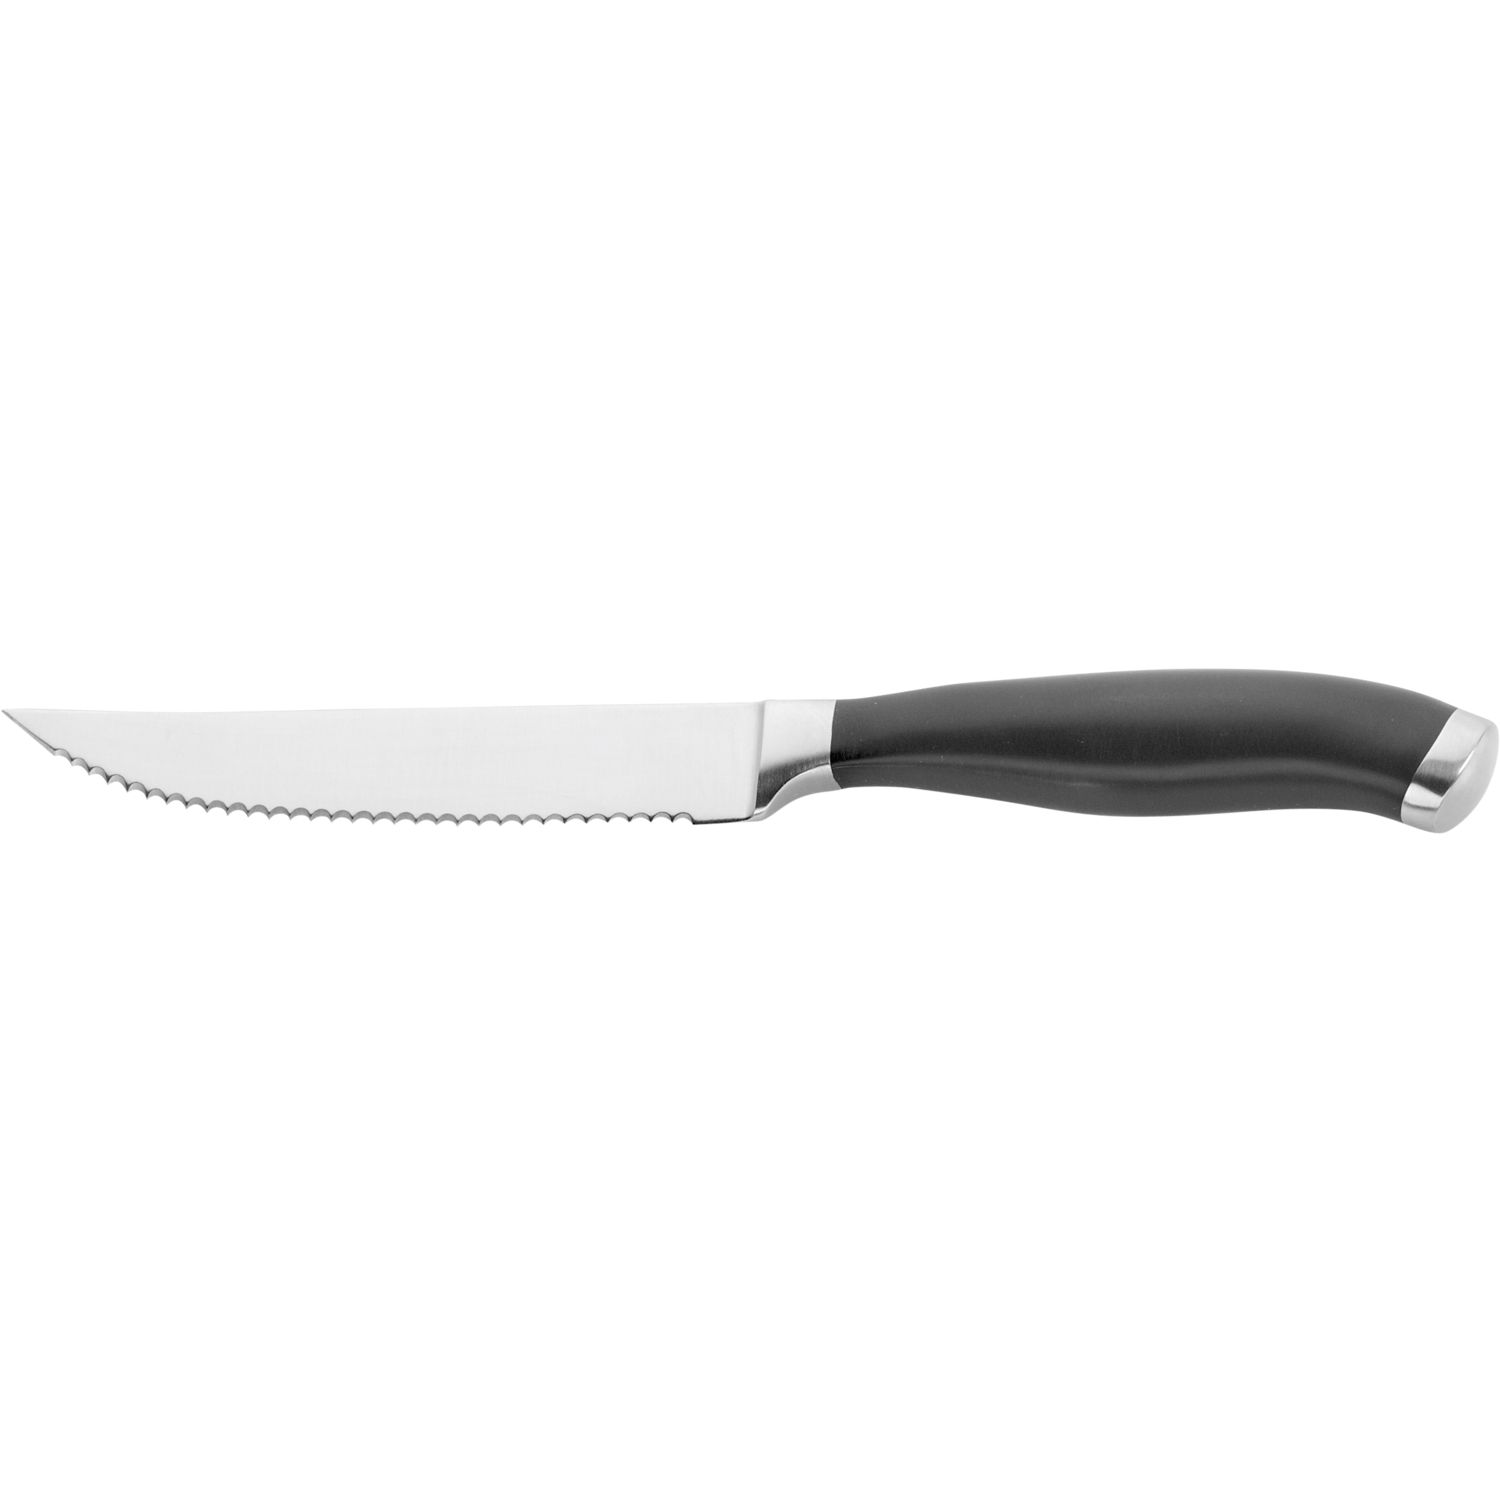 Steakmesser »Professional« mm 120 mit Klingenlänge: PINTINOX Sägeschliff,